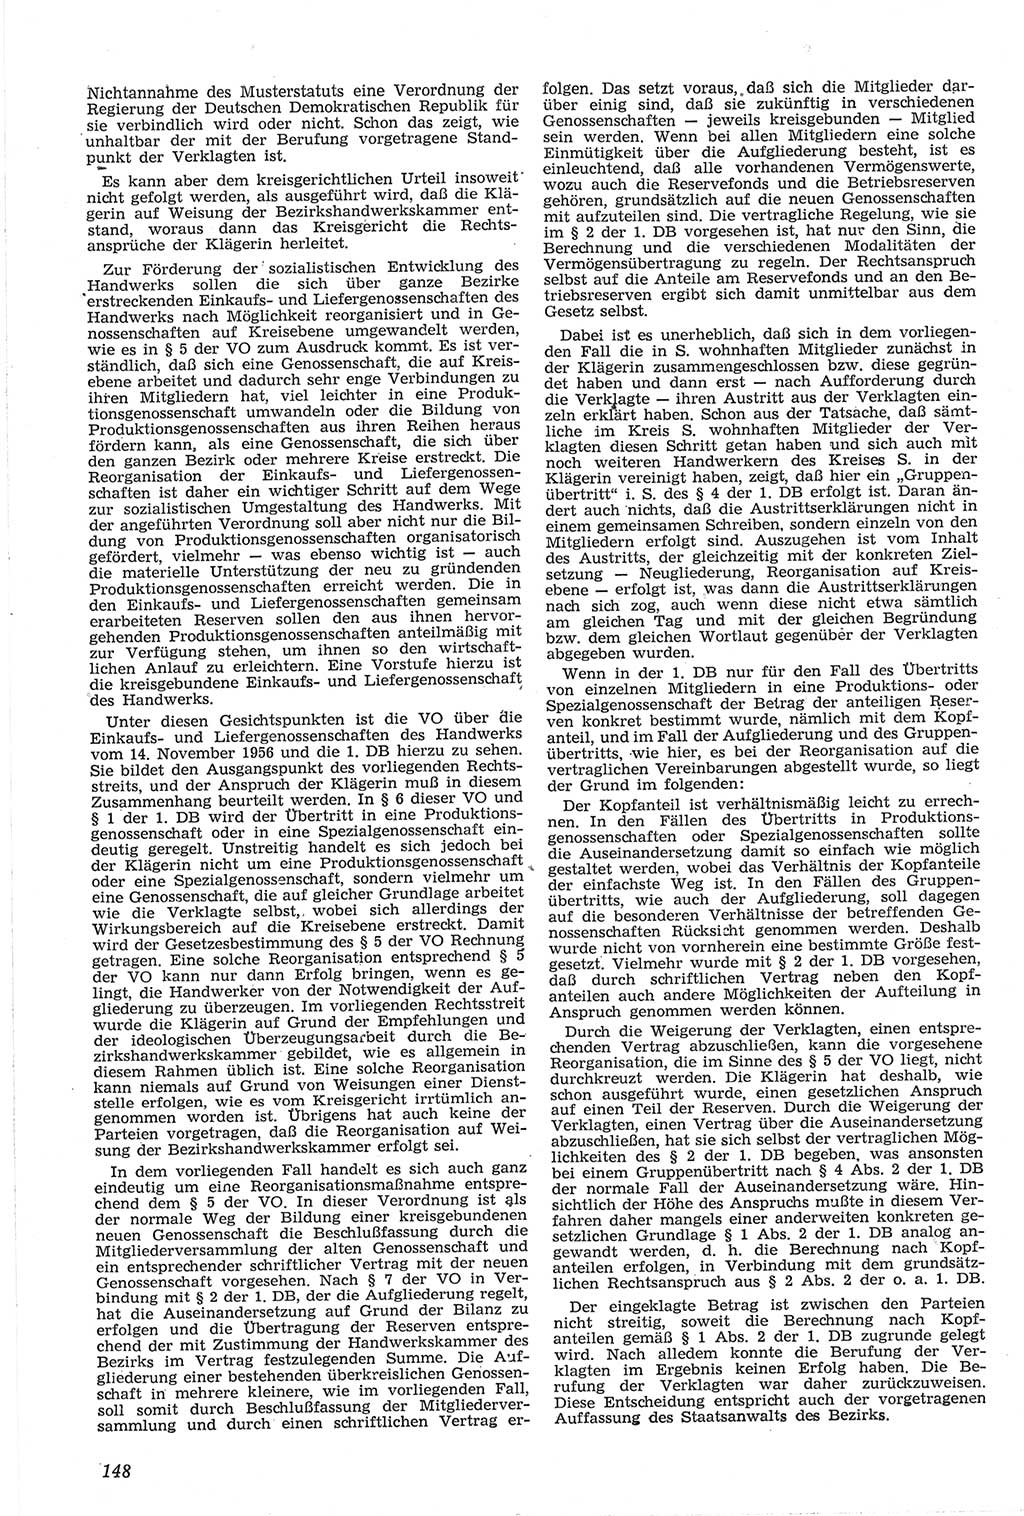 Neue Justiz (NJ), Zeitschrift für Recht und Rechtswissenschaft [Deutsche Demokratische Republik (DDR)], 14. Jahrgang 1960, Seite 148 (NJ DDR 1960, S. 148)